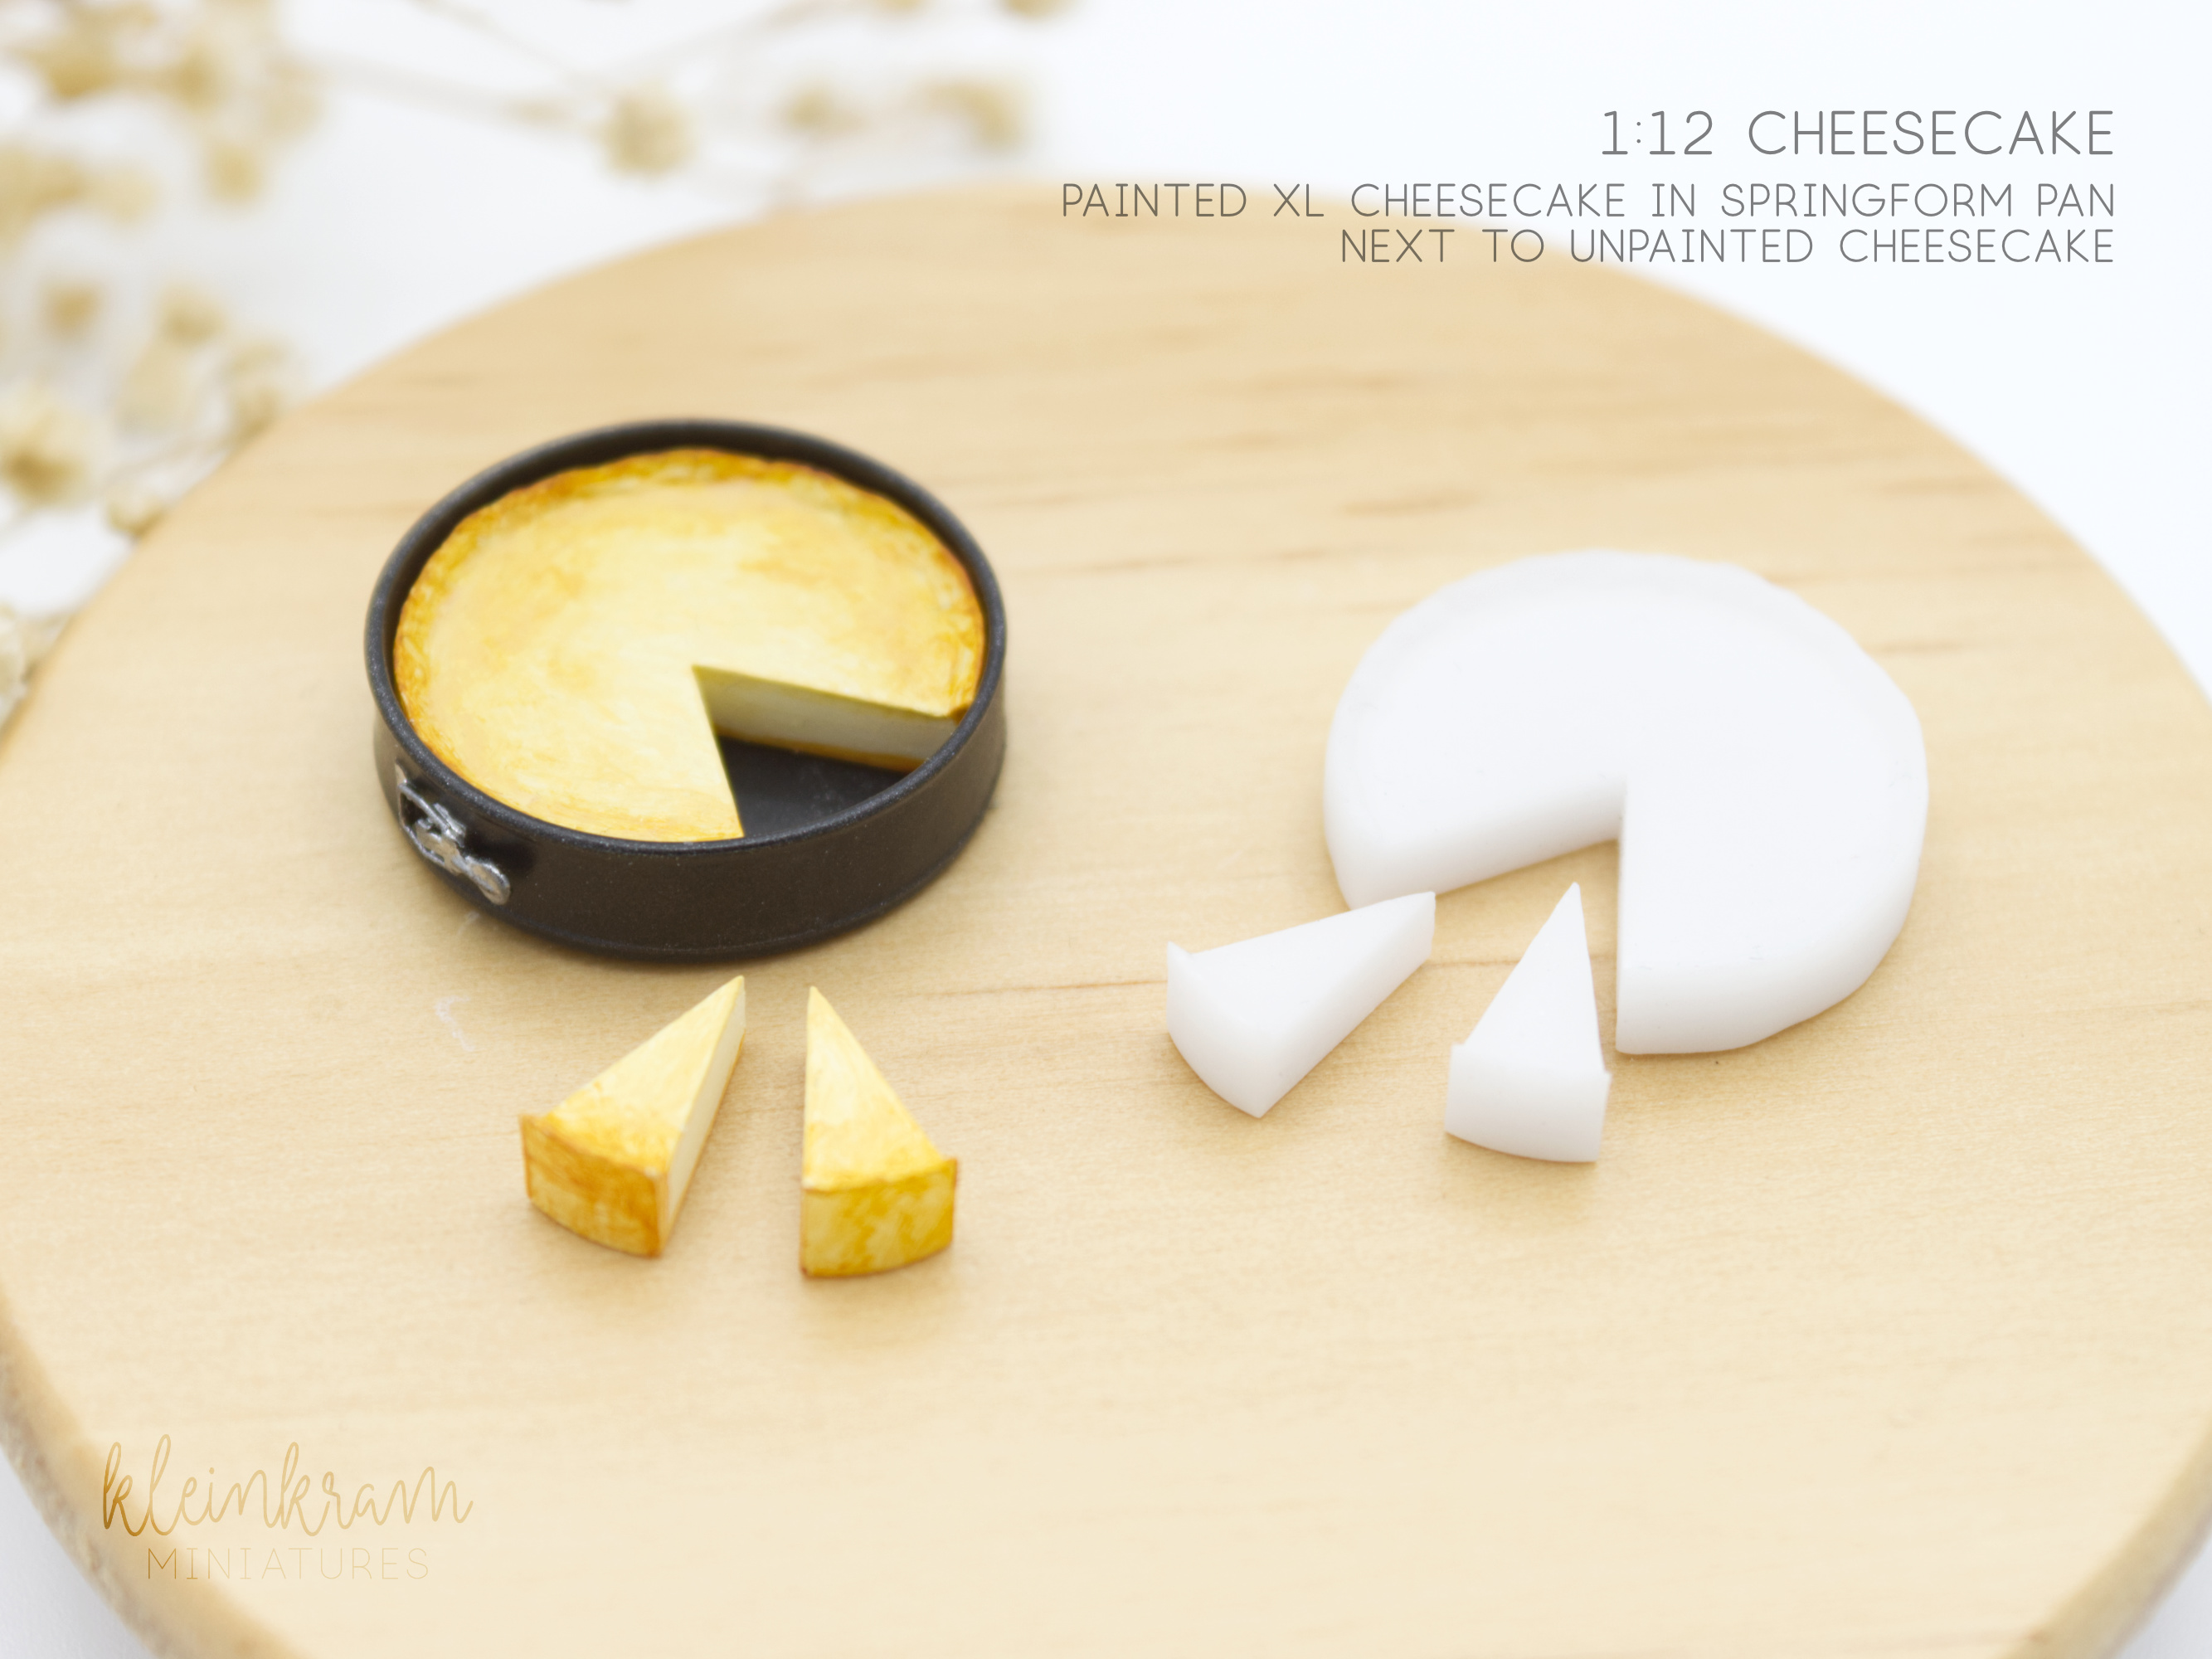 Cheesecake - 1/12 Miniature